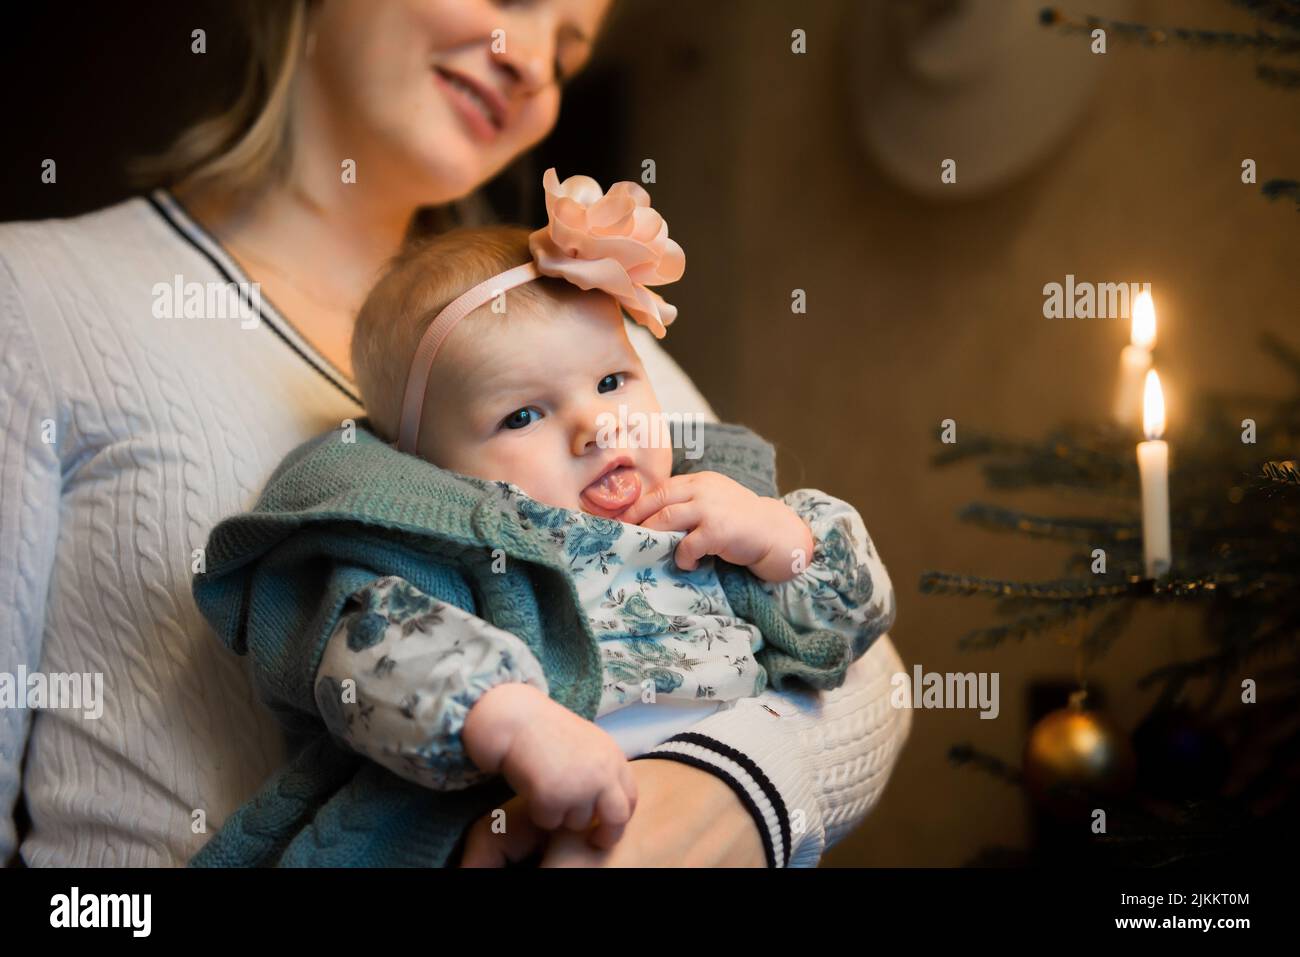 Un gros plan d'une femme tenant un bébé Banque D'Images